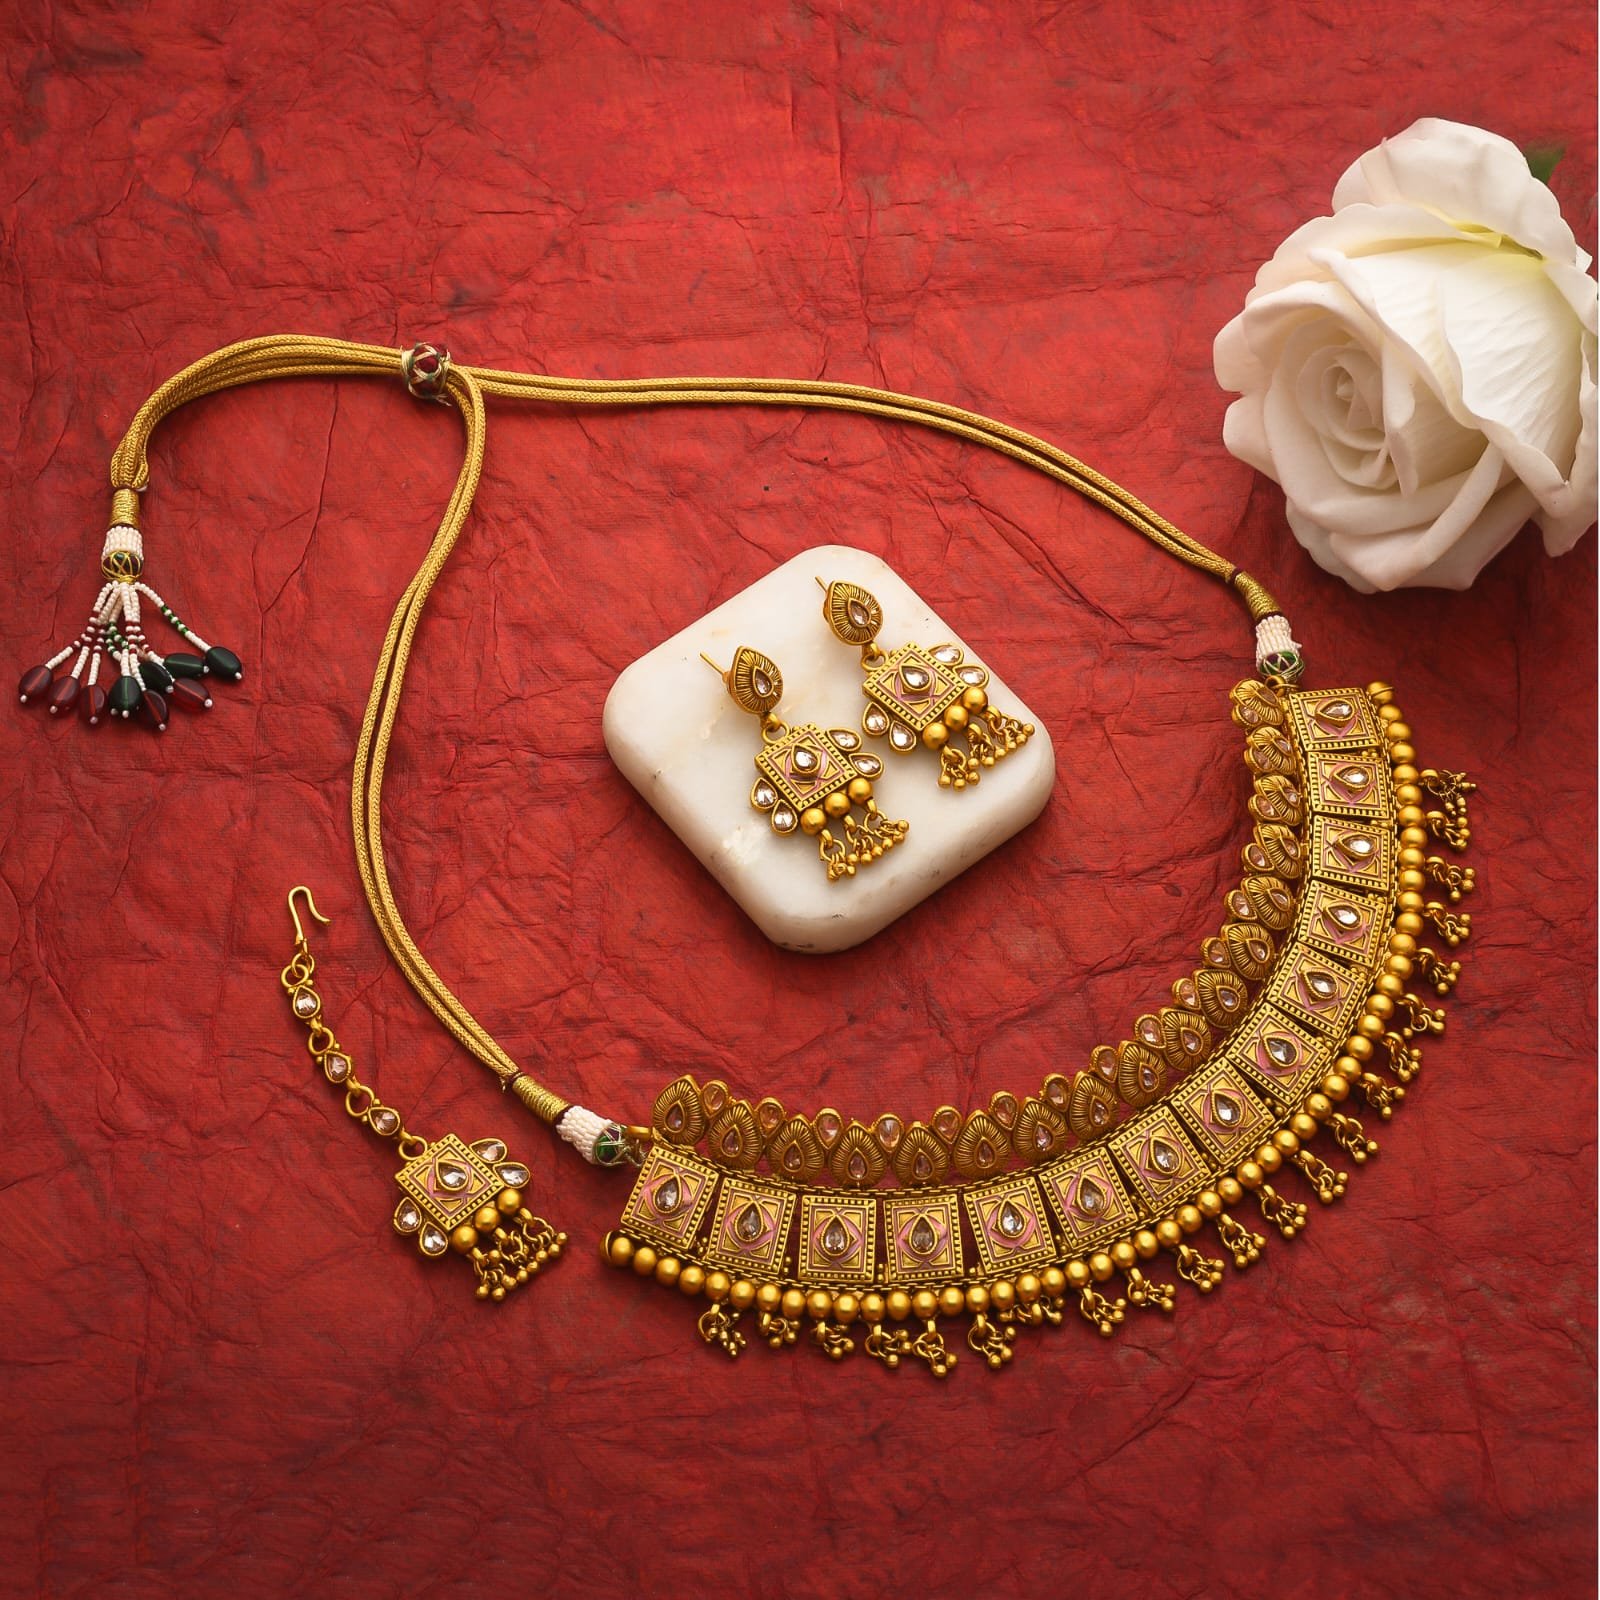 Rajasthani Royal Golden Necklace - theflamingojewels